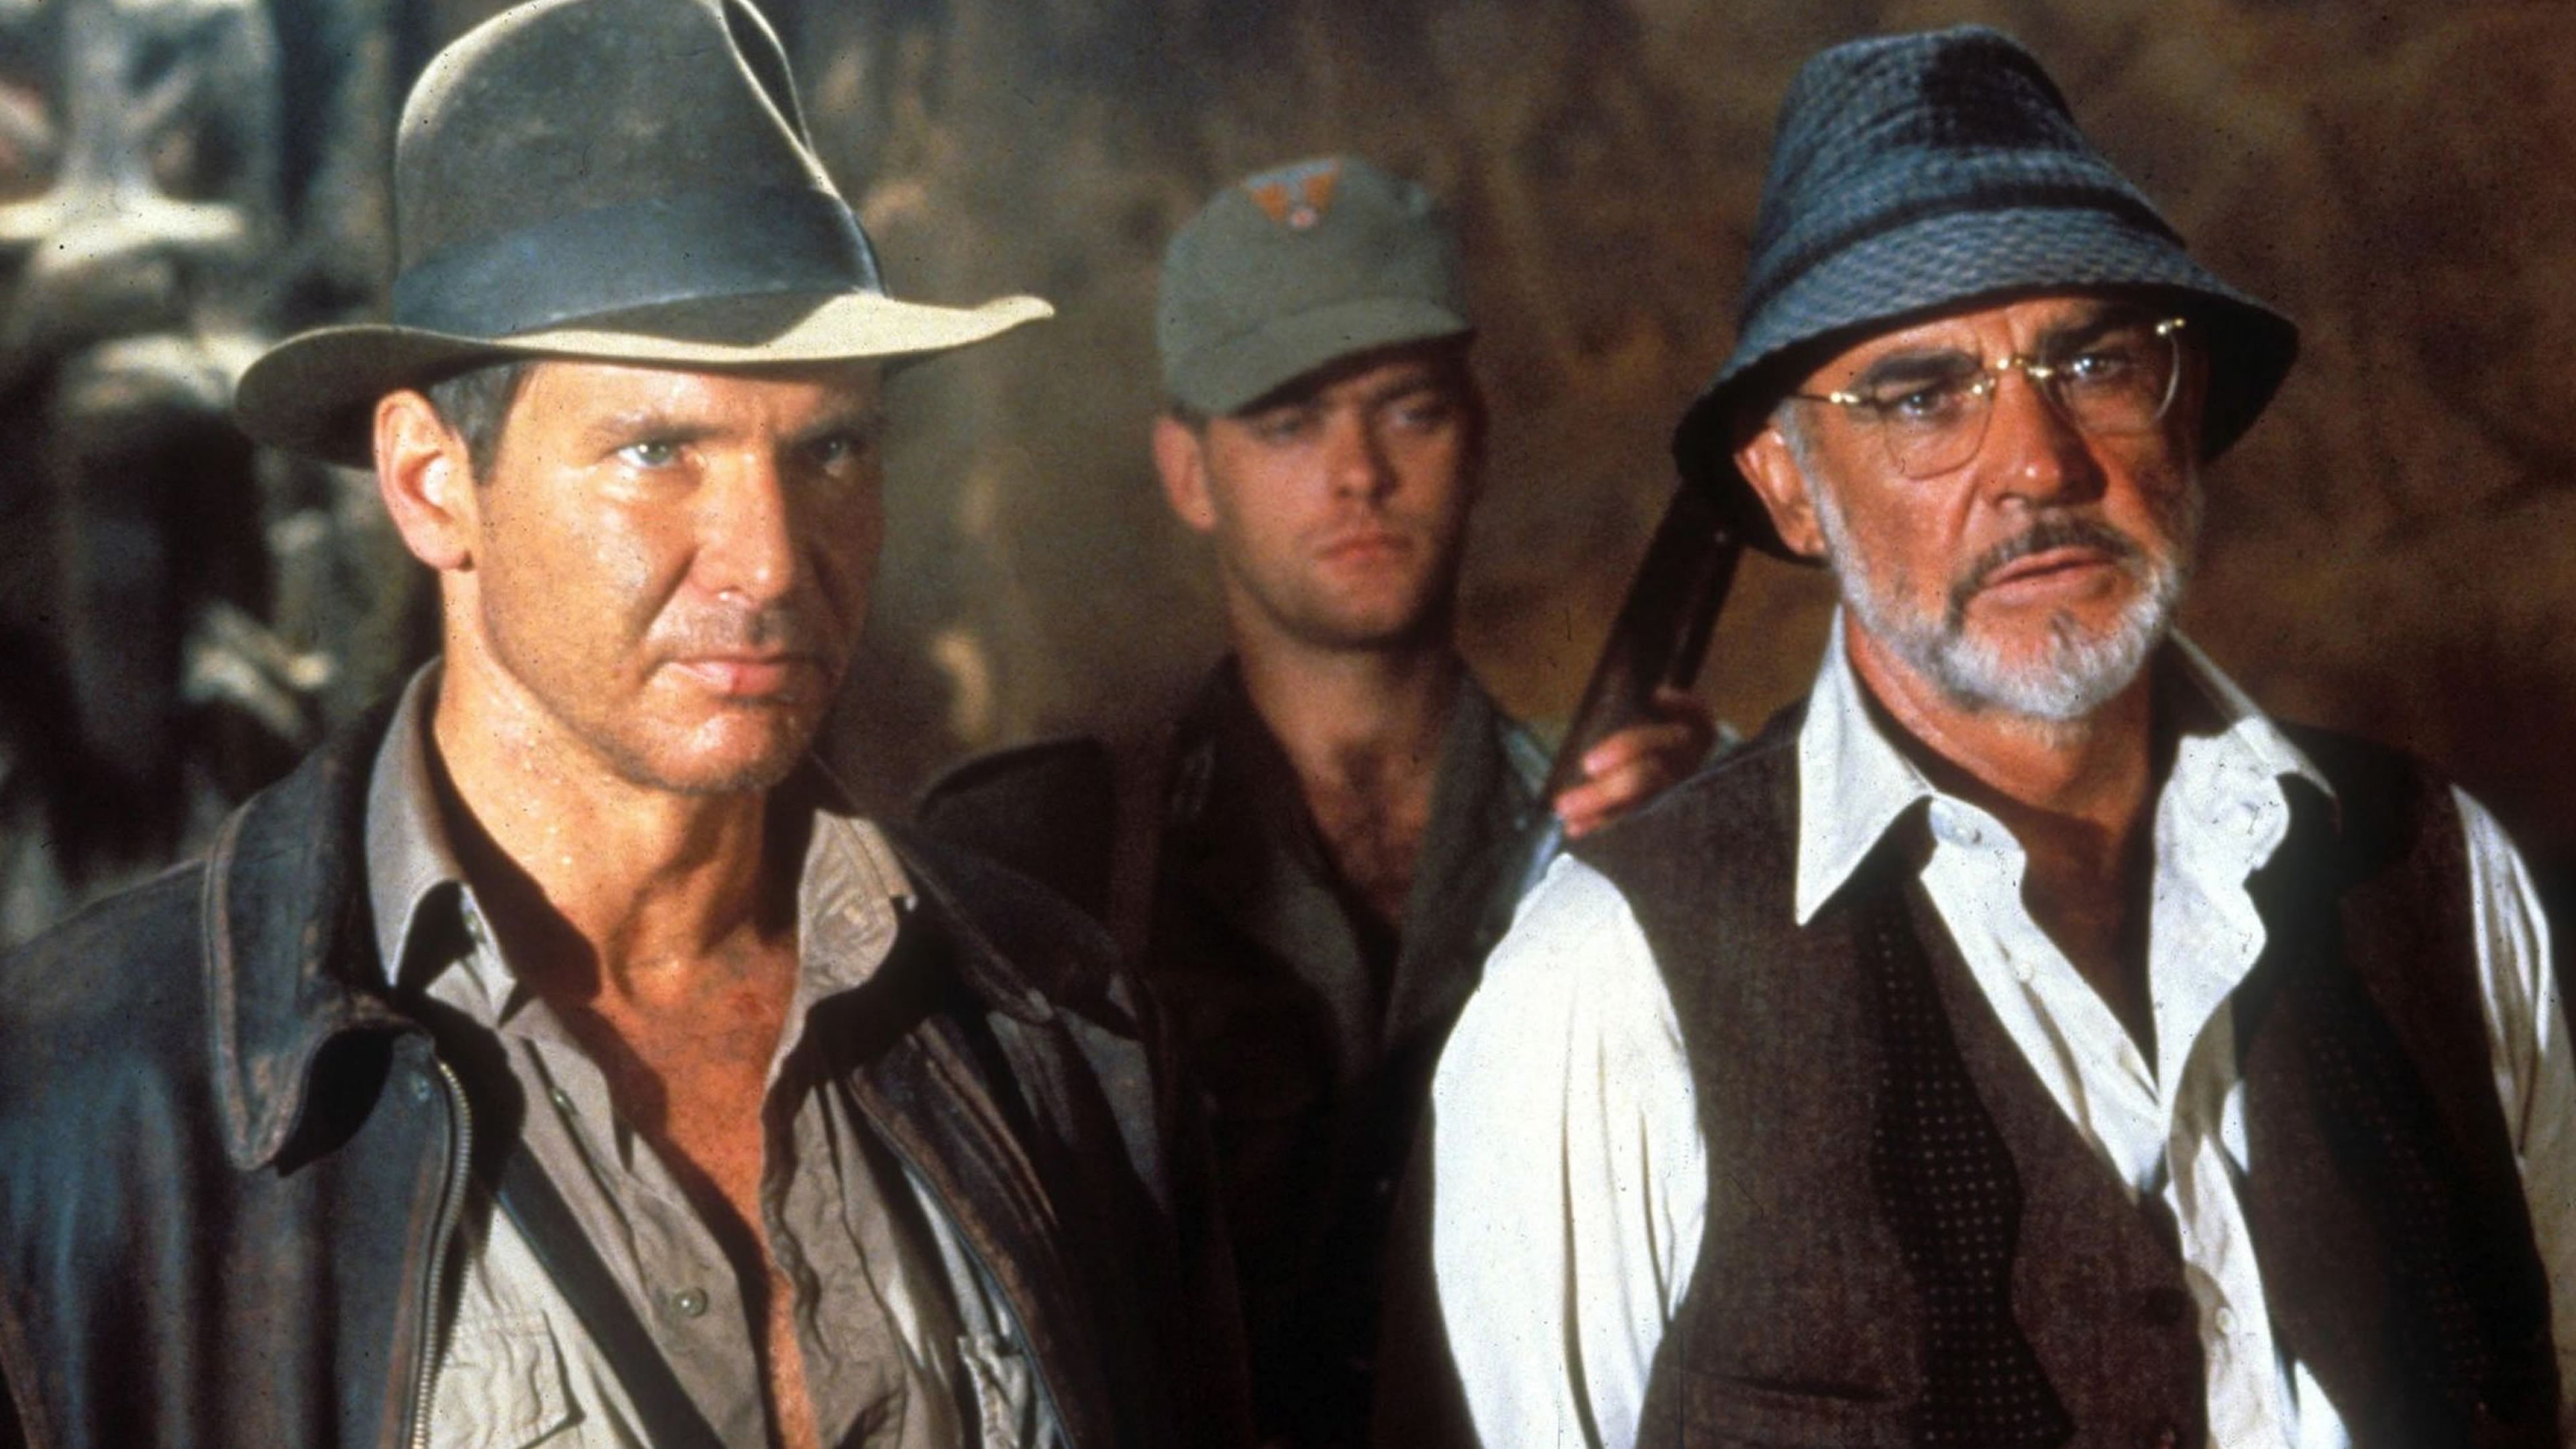 Indiana Jones y la última cruzada (1989) - Indy (Harrison Ford) y Henry Jones (Sean Connery)